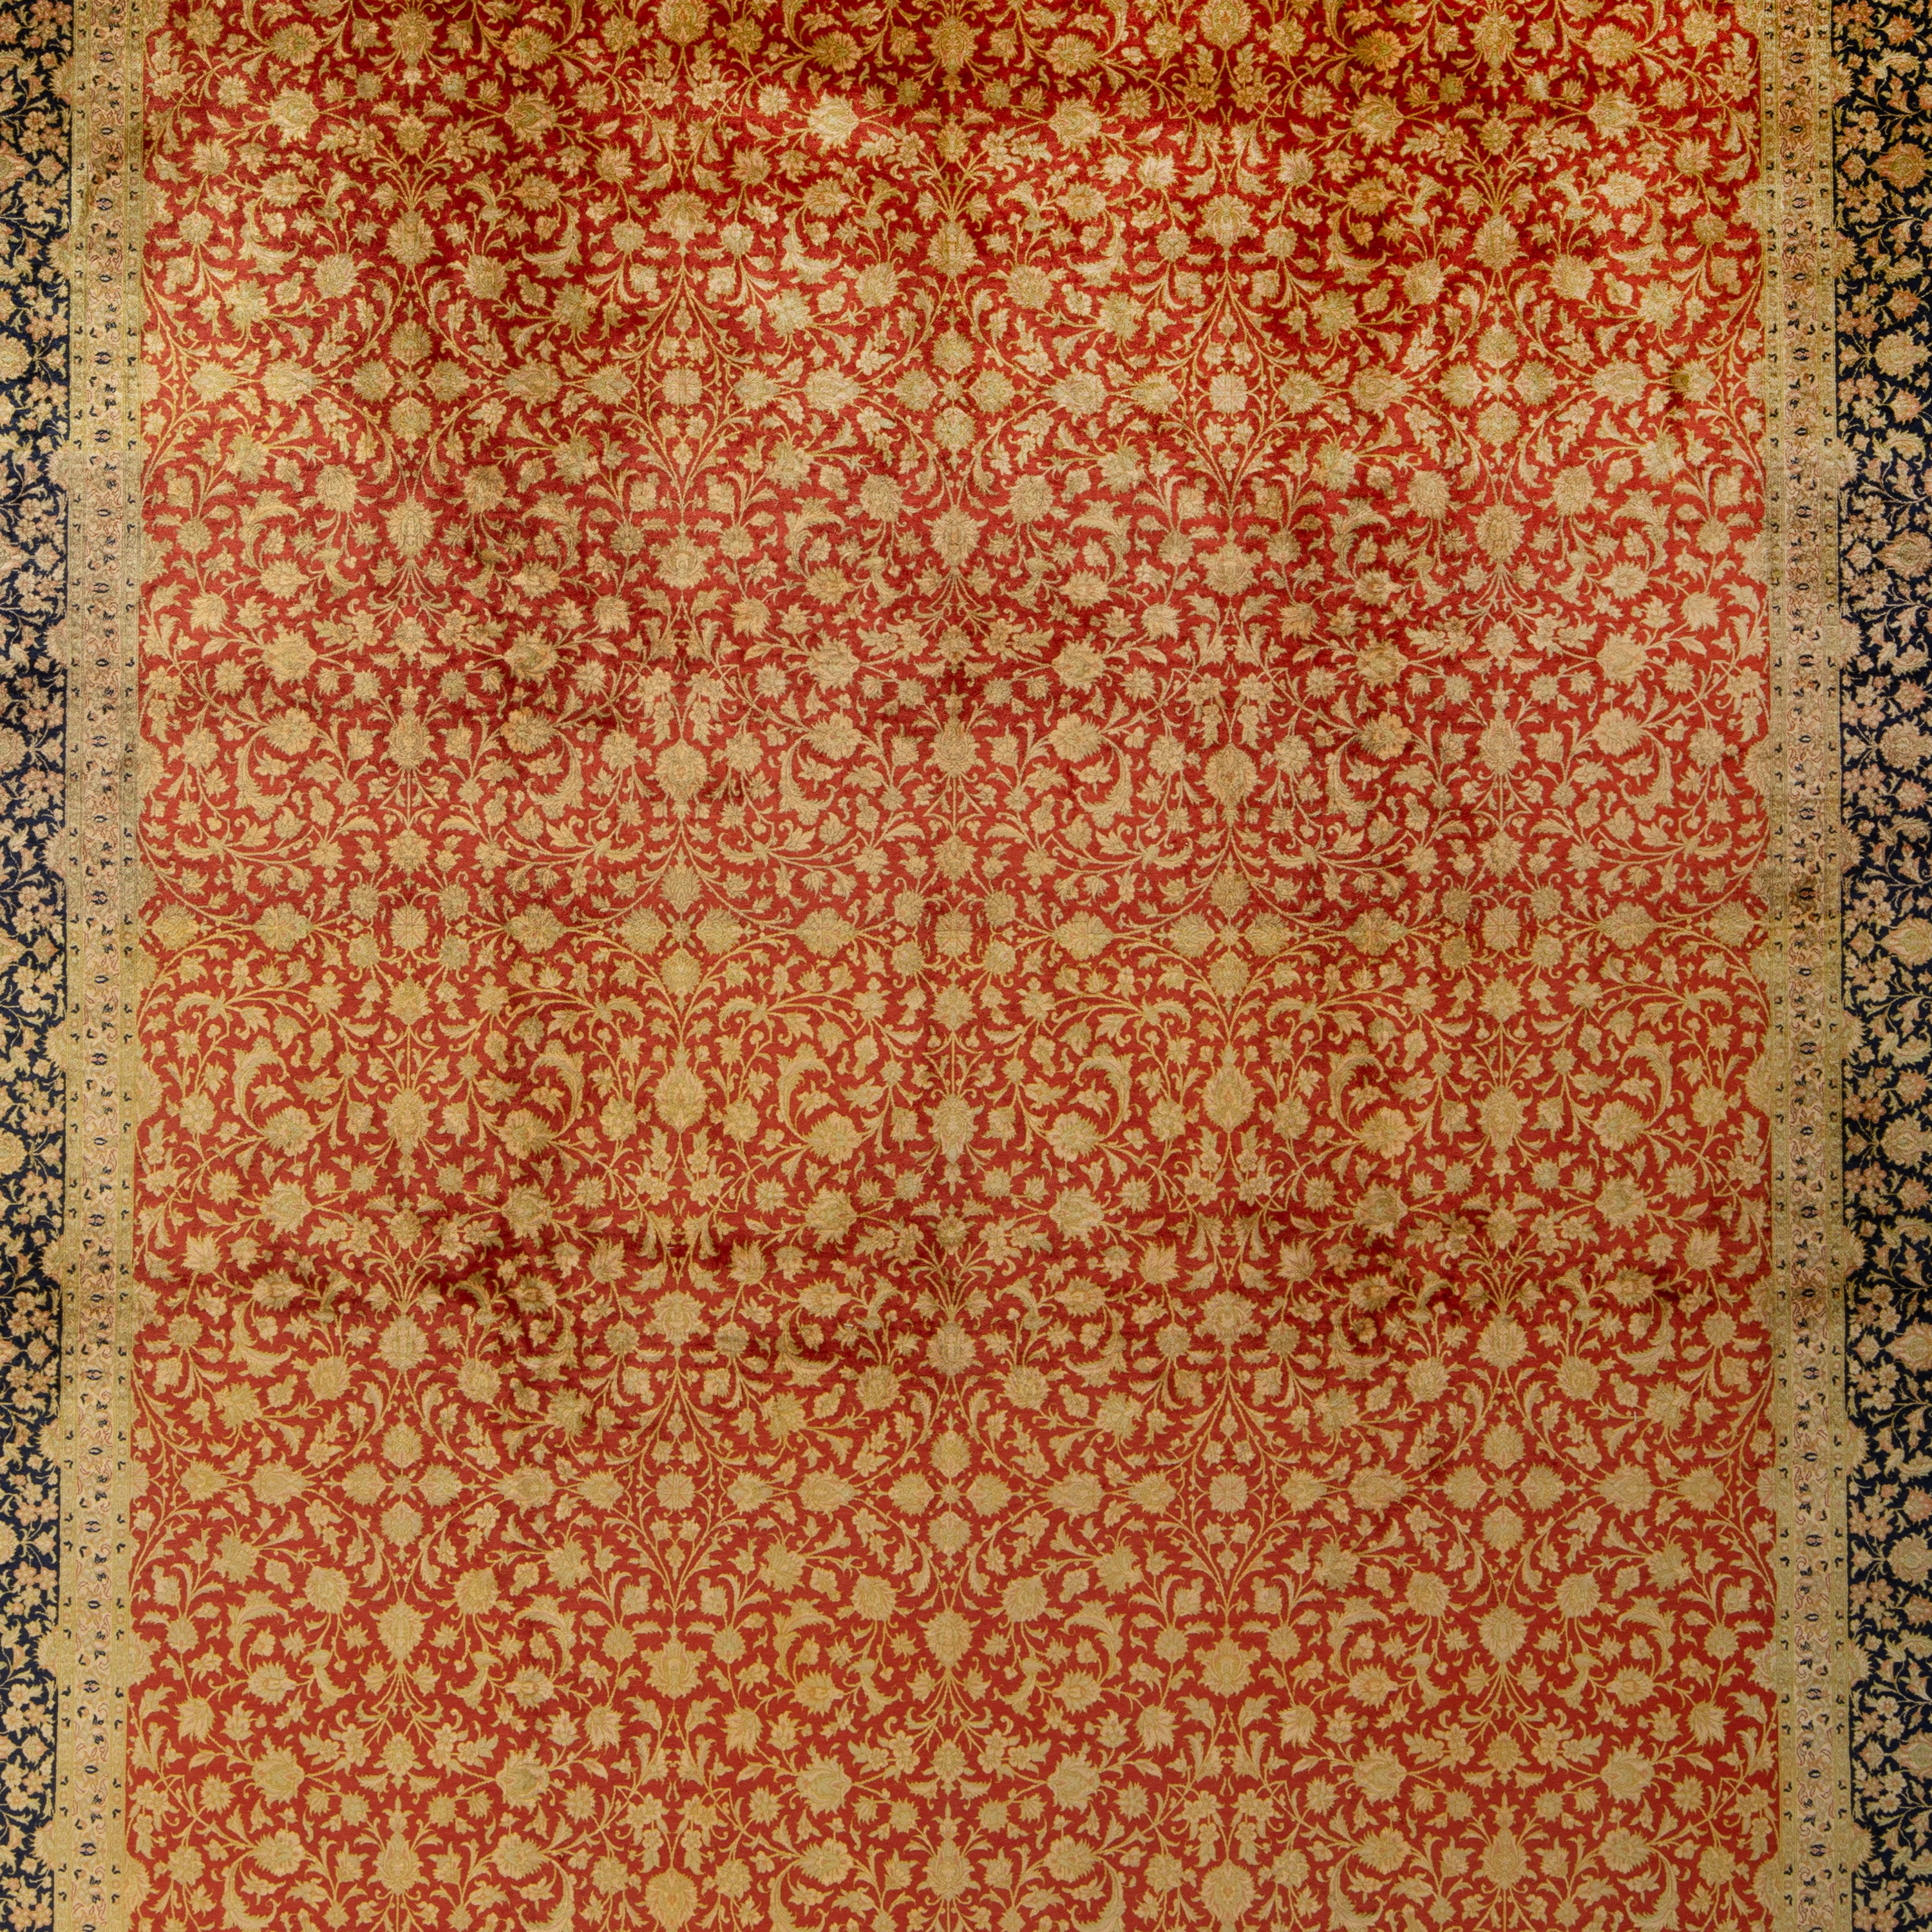 Antique Persian, Red Silk Qum Rug - 8'10" x 11'10" Default Title